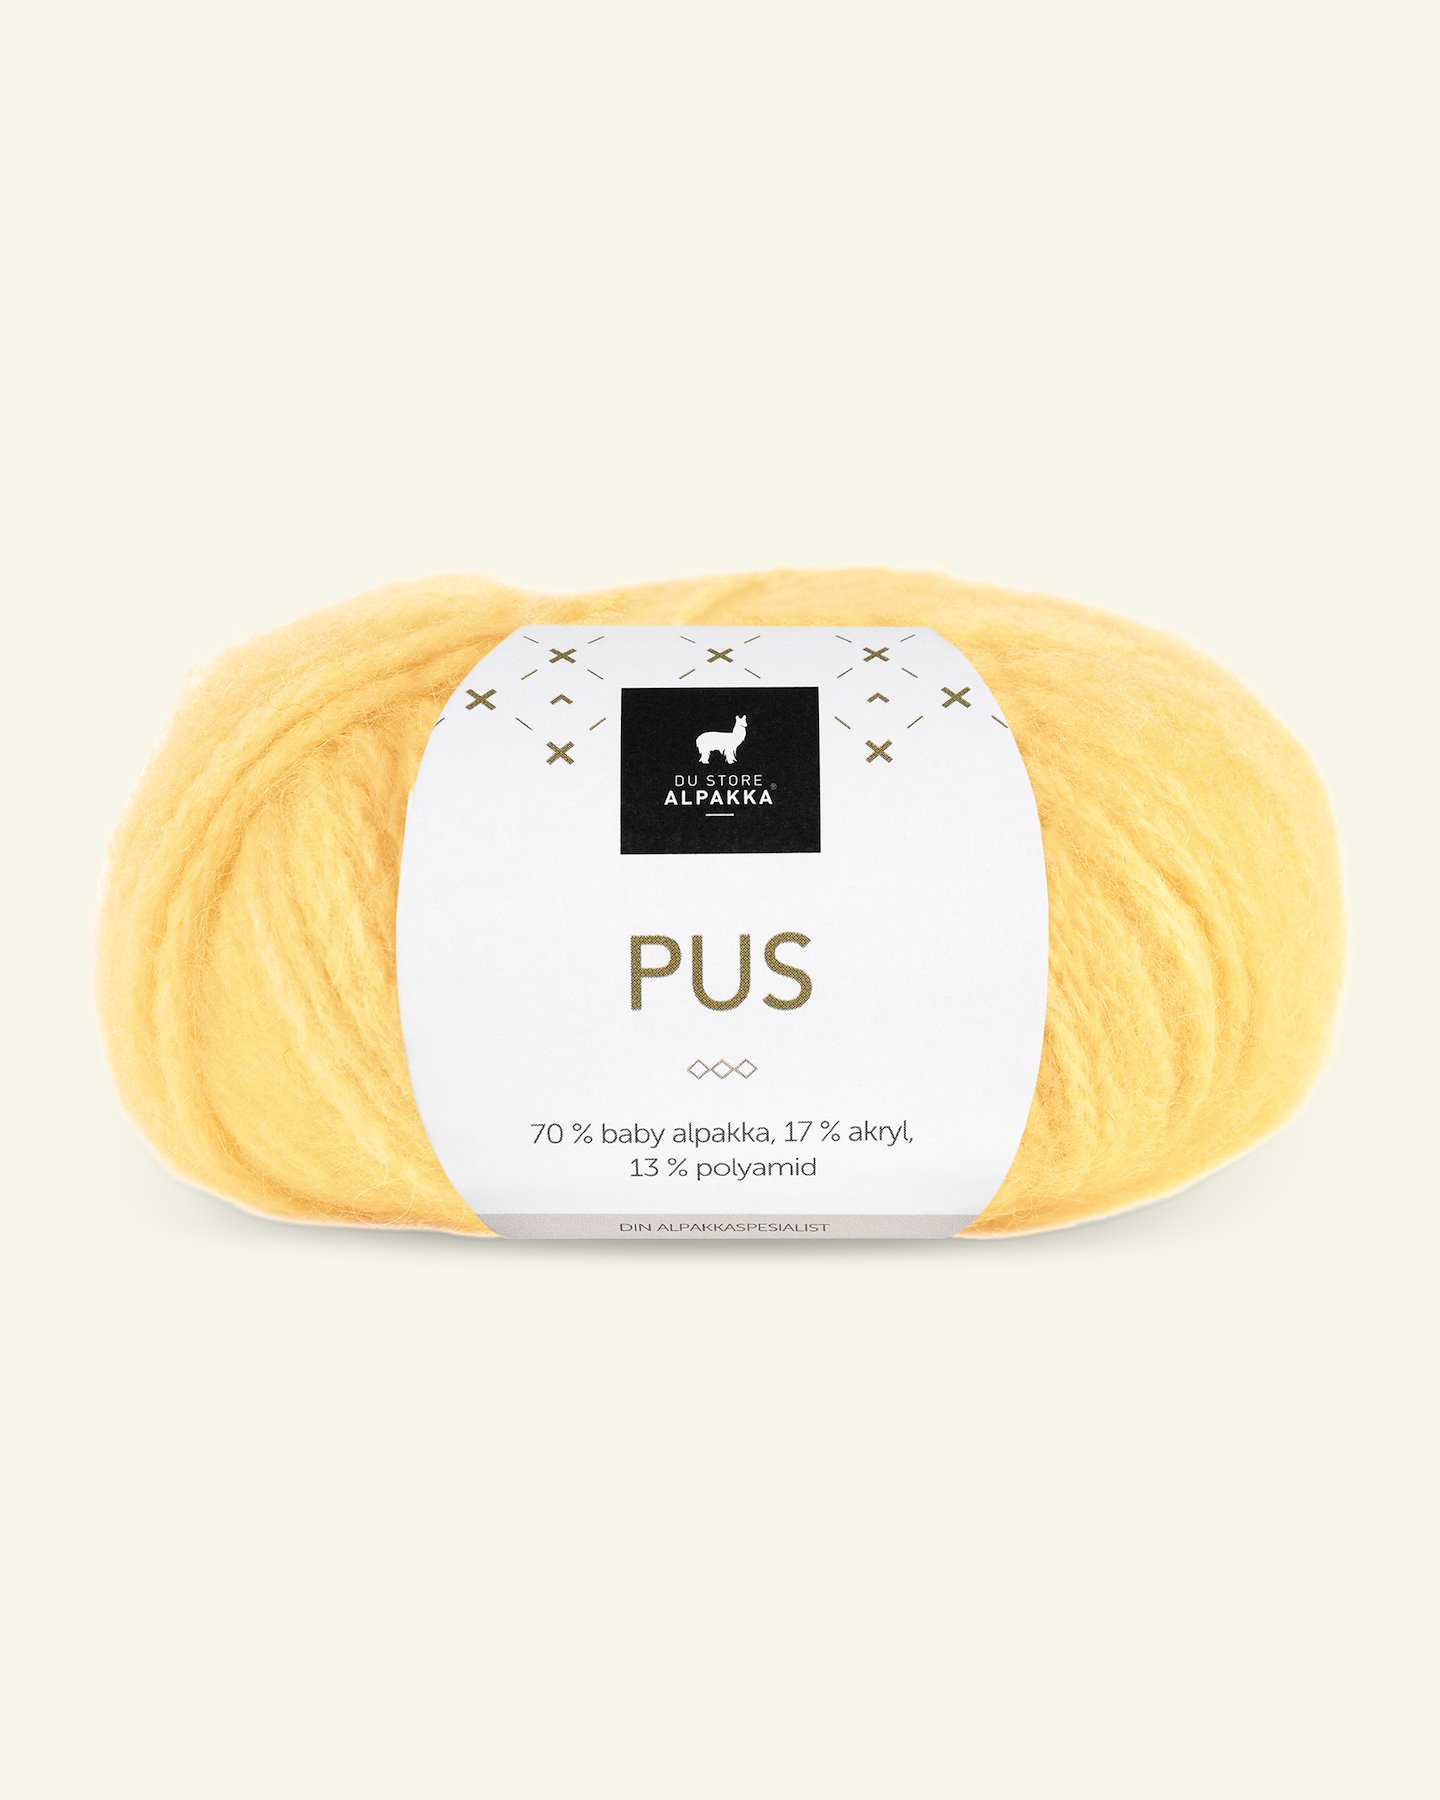 Du Store Alpakka, alpaca blandingsgarn "Pus", gul (4008) 90000715_pack